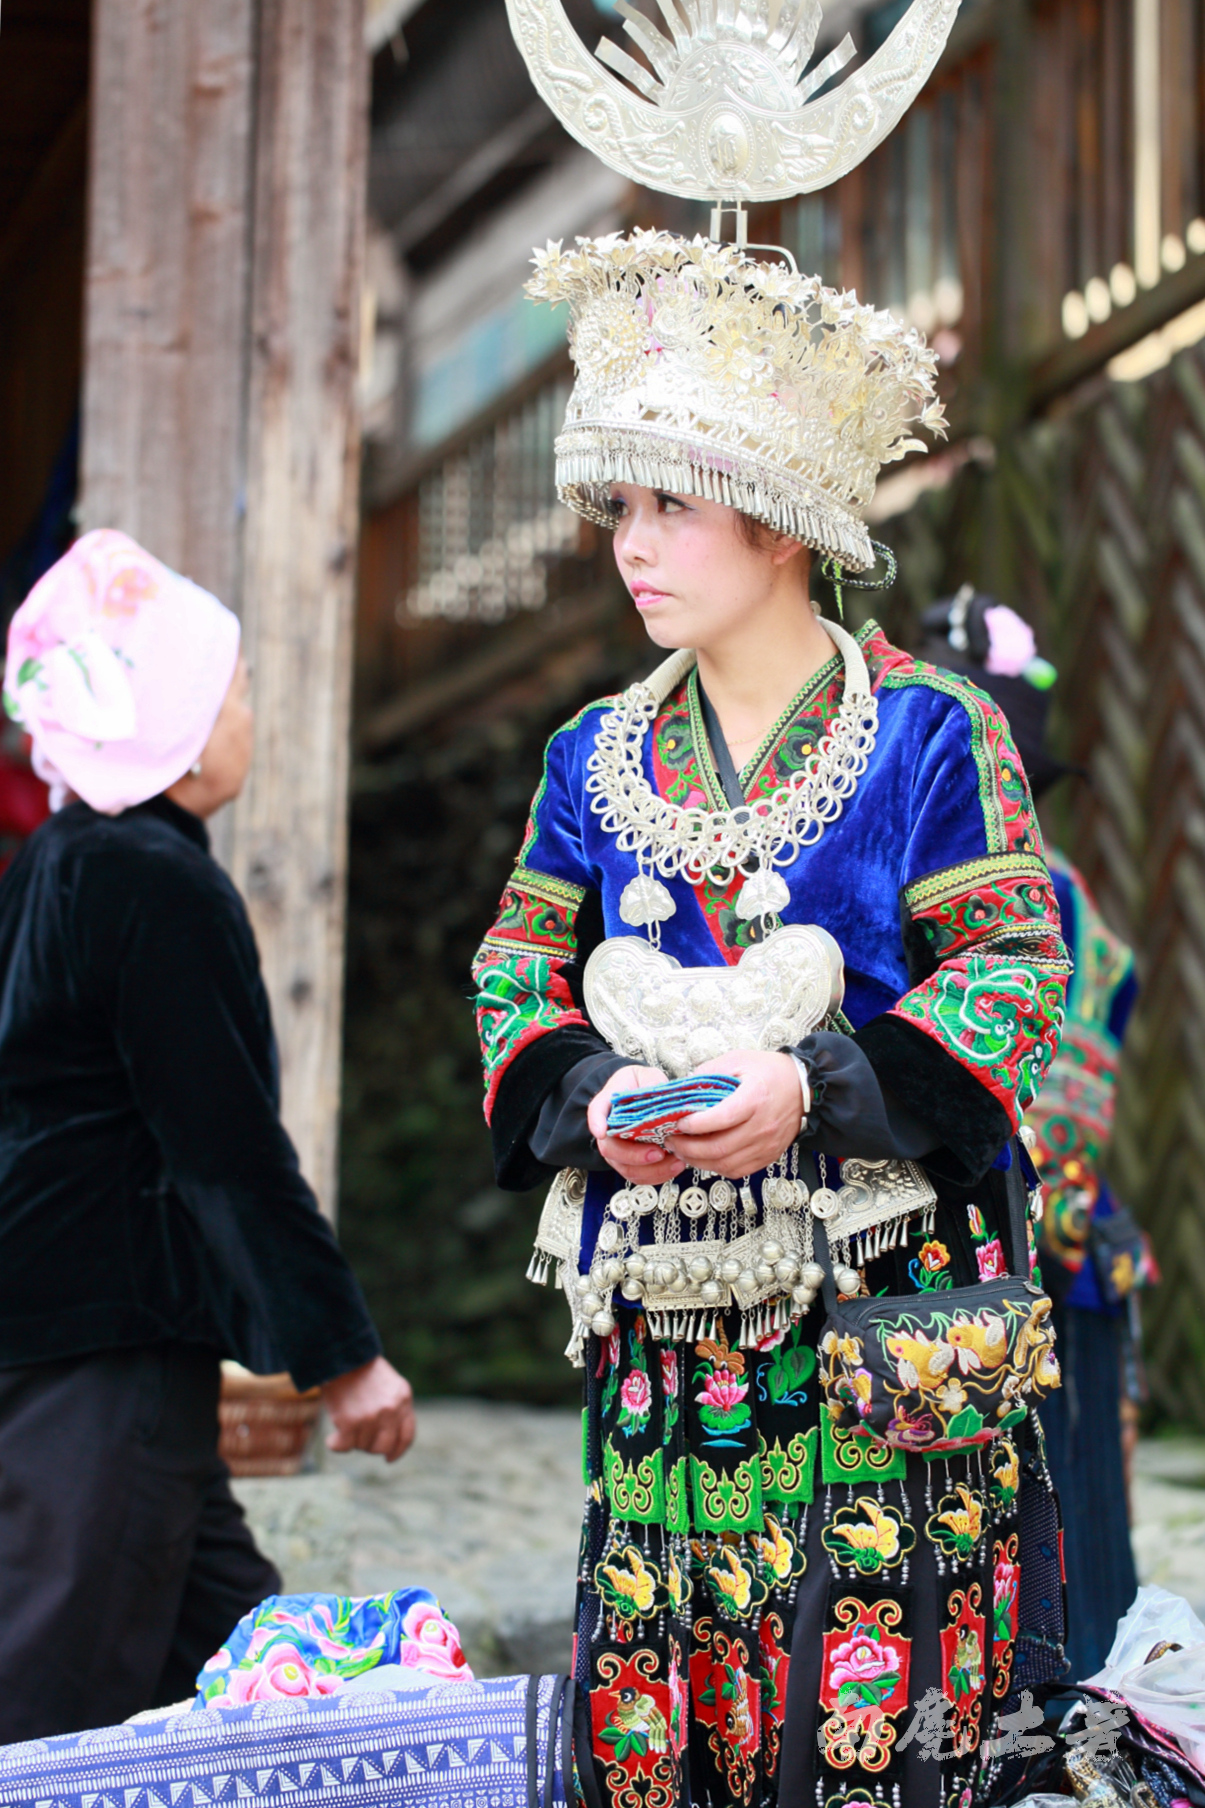 一个苗族村寨，居然有这么多美女[24P]|旅游讨论 - 武当休闲山庄 - 稳定,和谐,人性化的中文社区